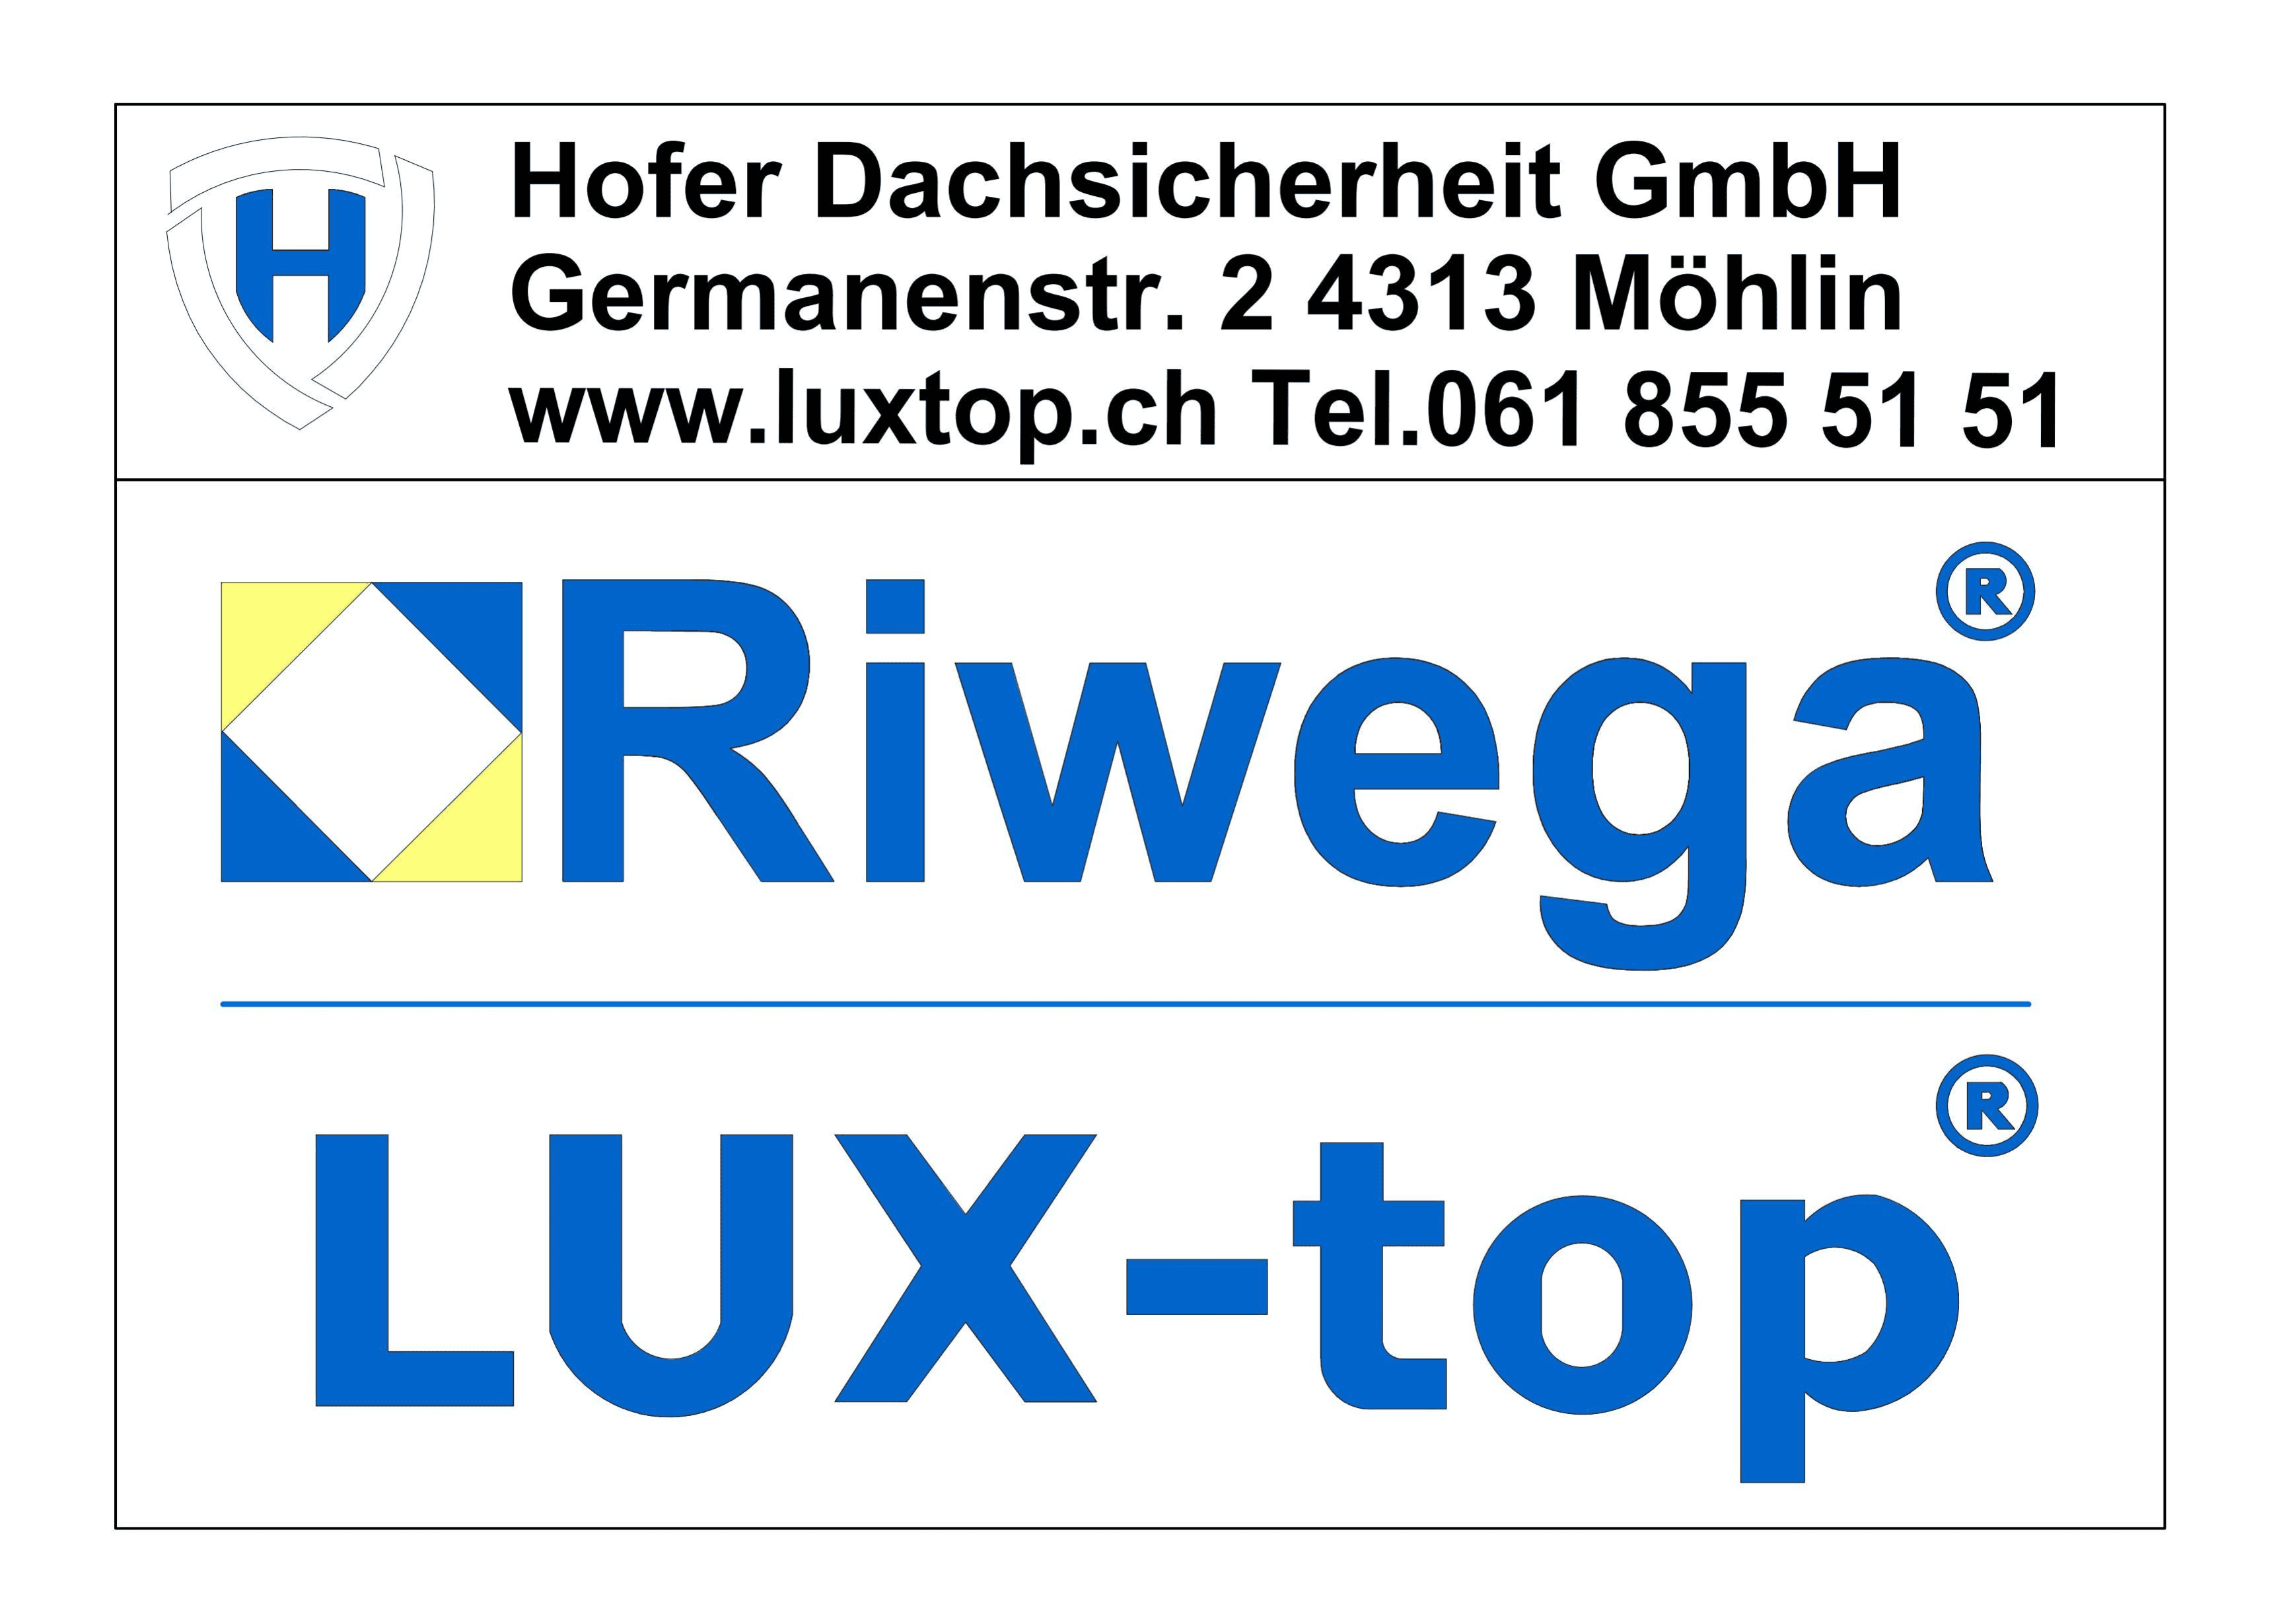 Hofer Dachsicherheit GmbH